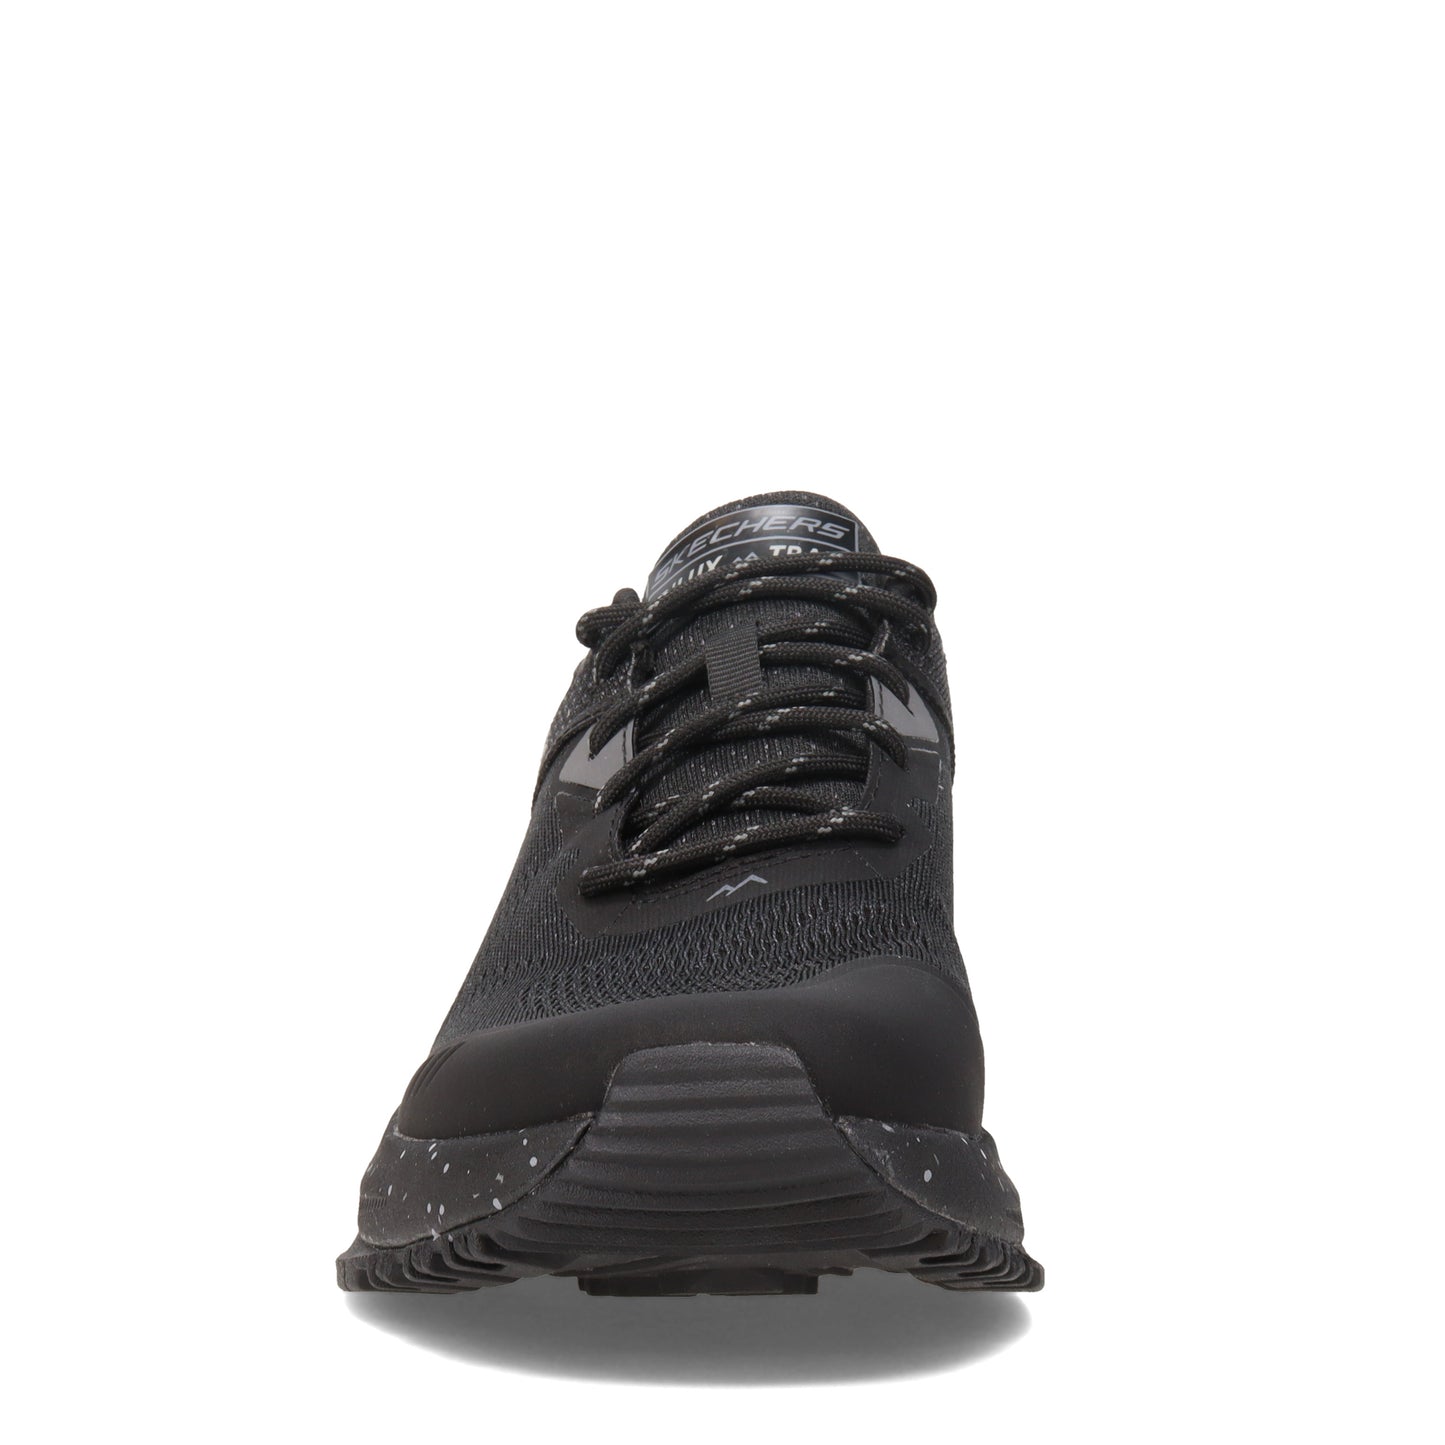 Peltz Shoes  Men's Skechers Relaxed Fit: D'Lux Trail Hiking Shoe Black/Black 237336-BBK